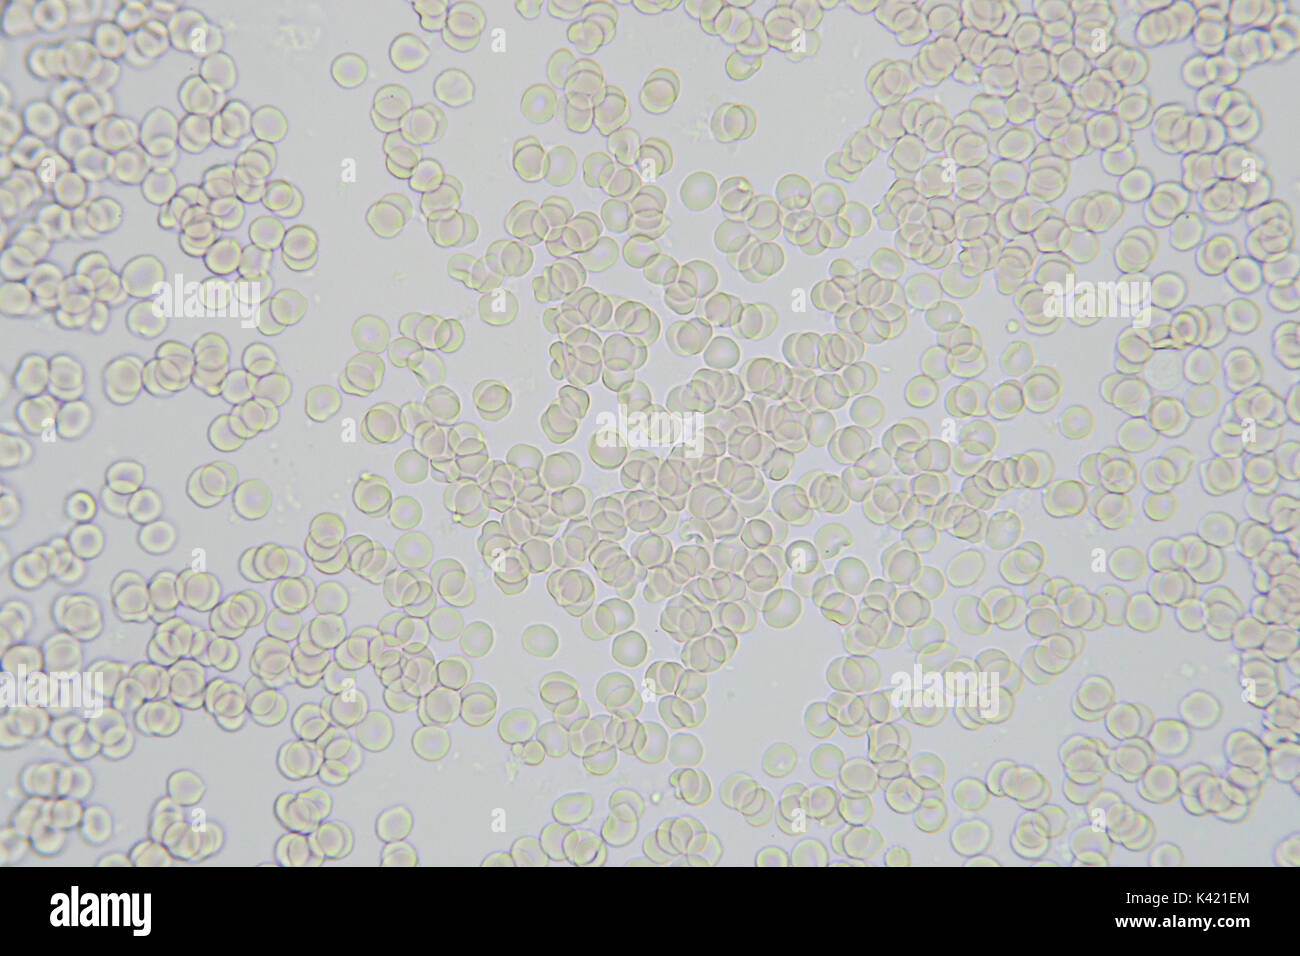 Blutzellen mikroskopische Bild Vergrößerung x 400 Stockfoto